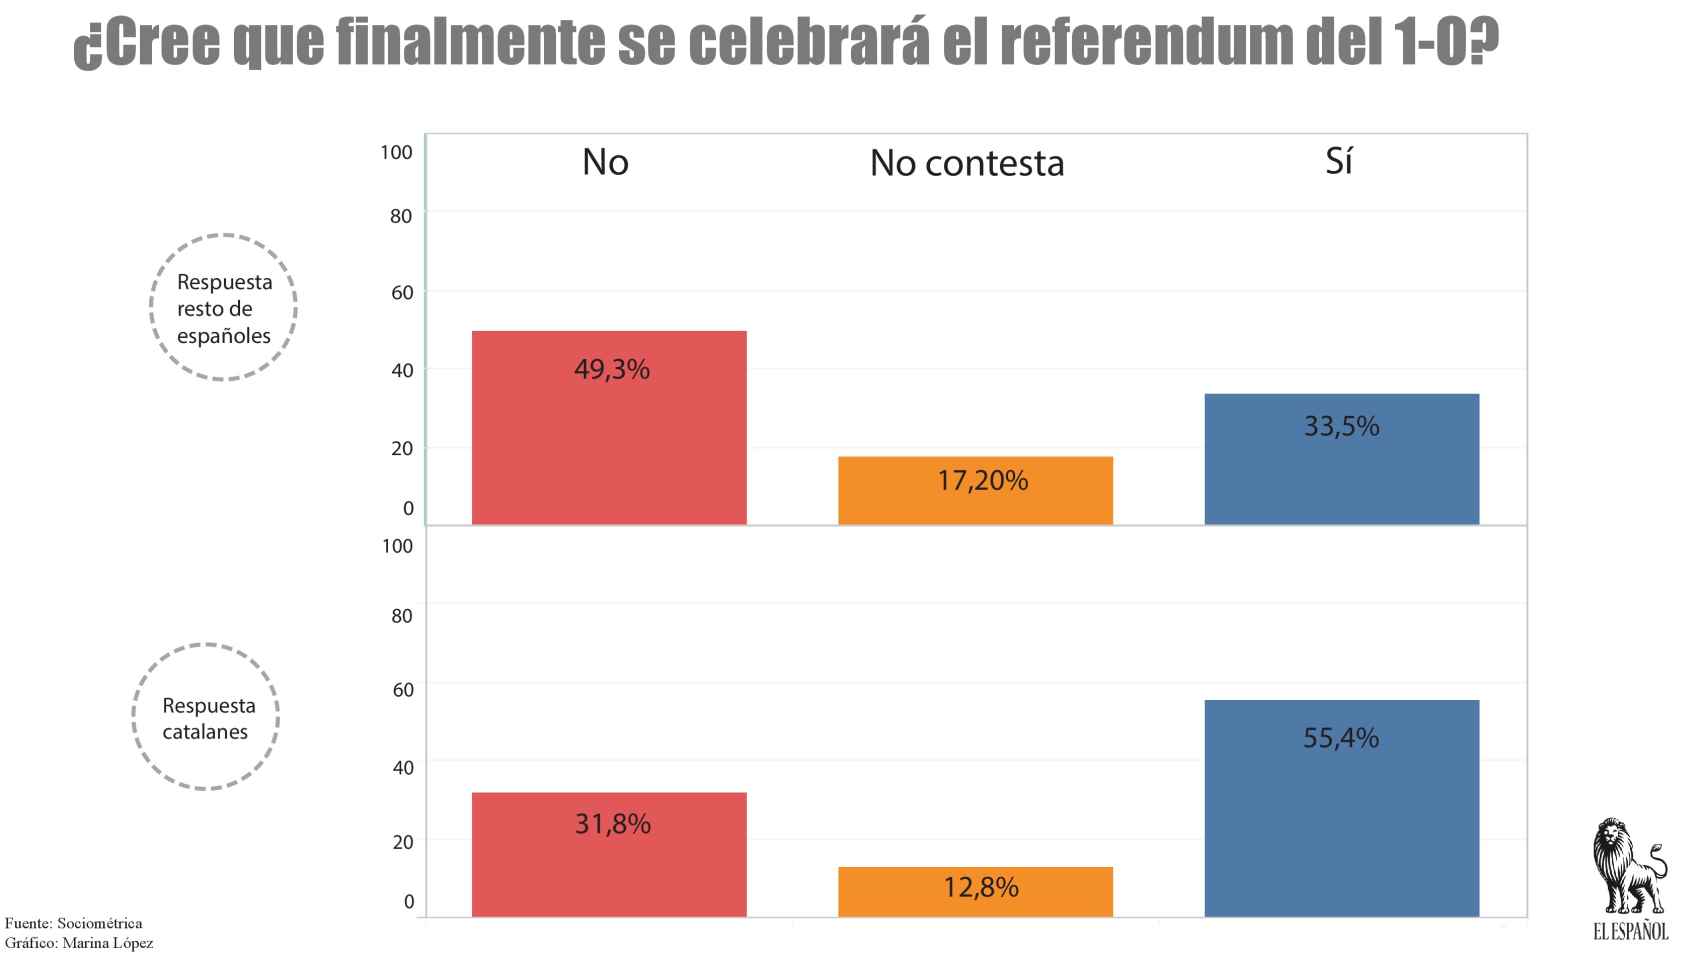 El 33,5% de los españoles cree que se celebrará el referéndum.